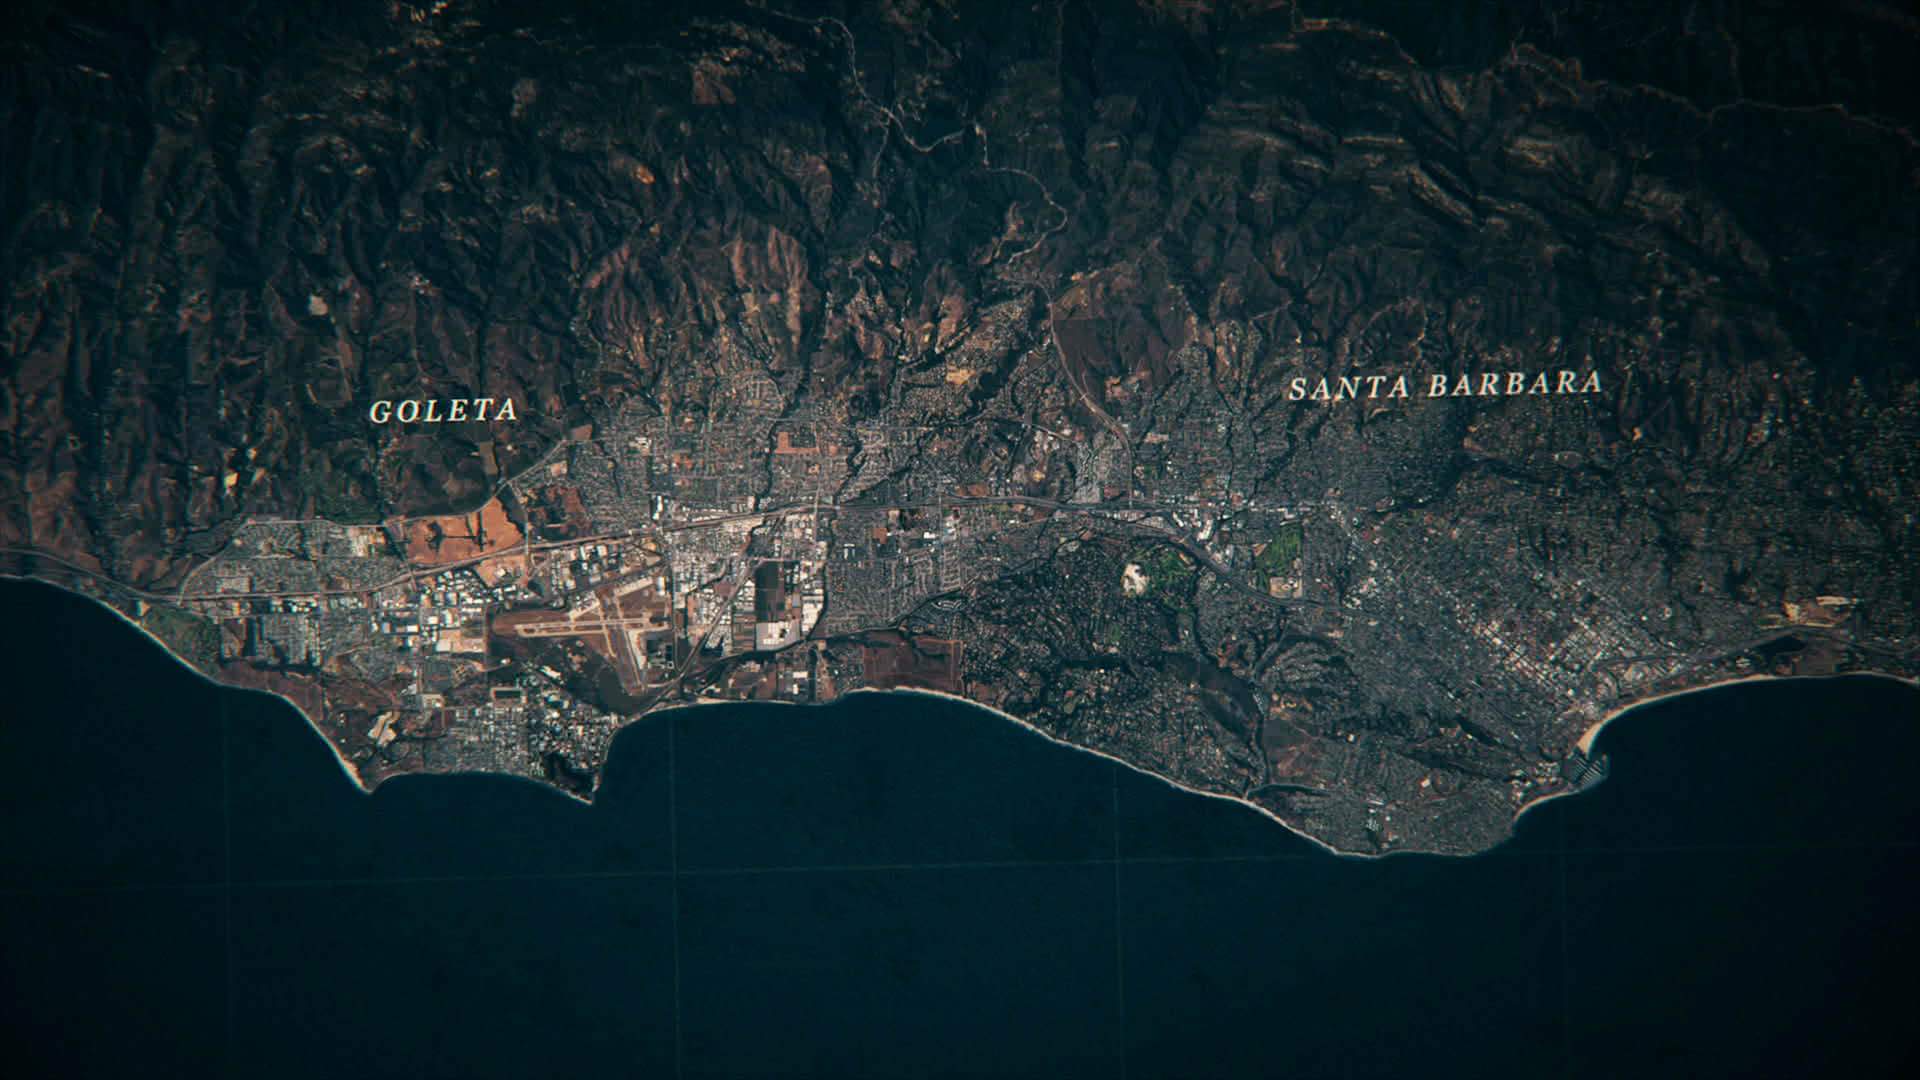 The Full Trailer for HBO's Golden State Killer Docuseries 'I'll Be Gone in the Dark' Is Here